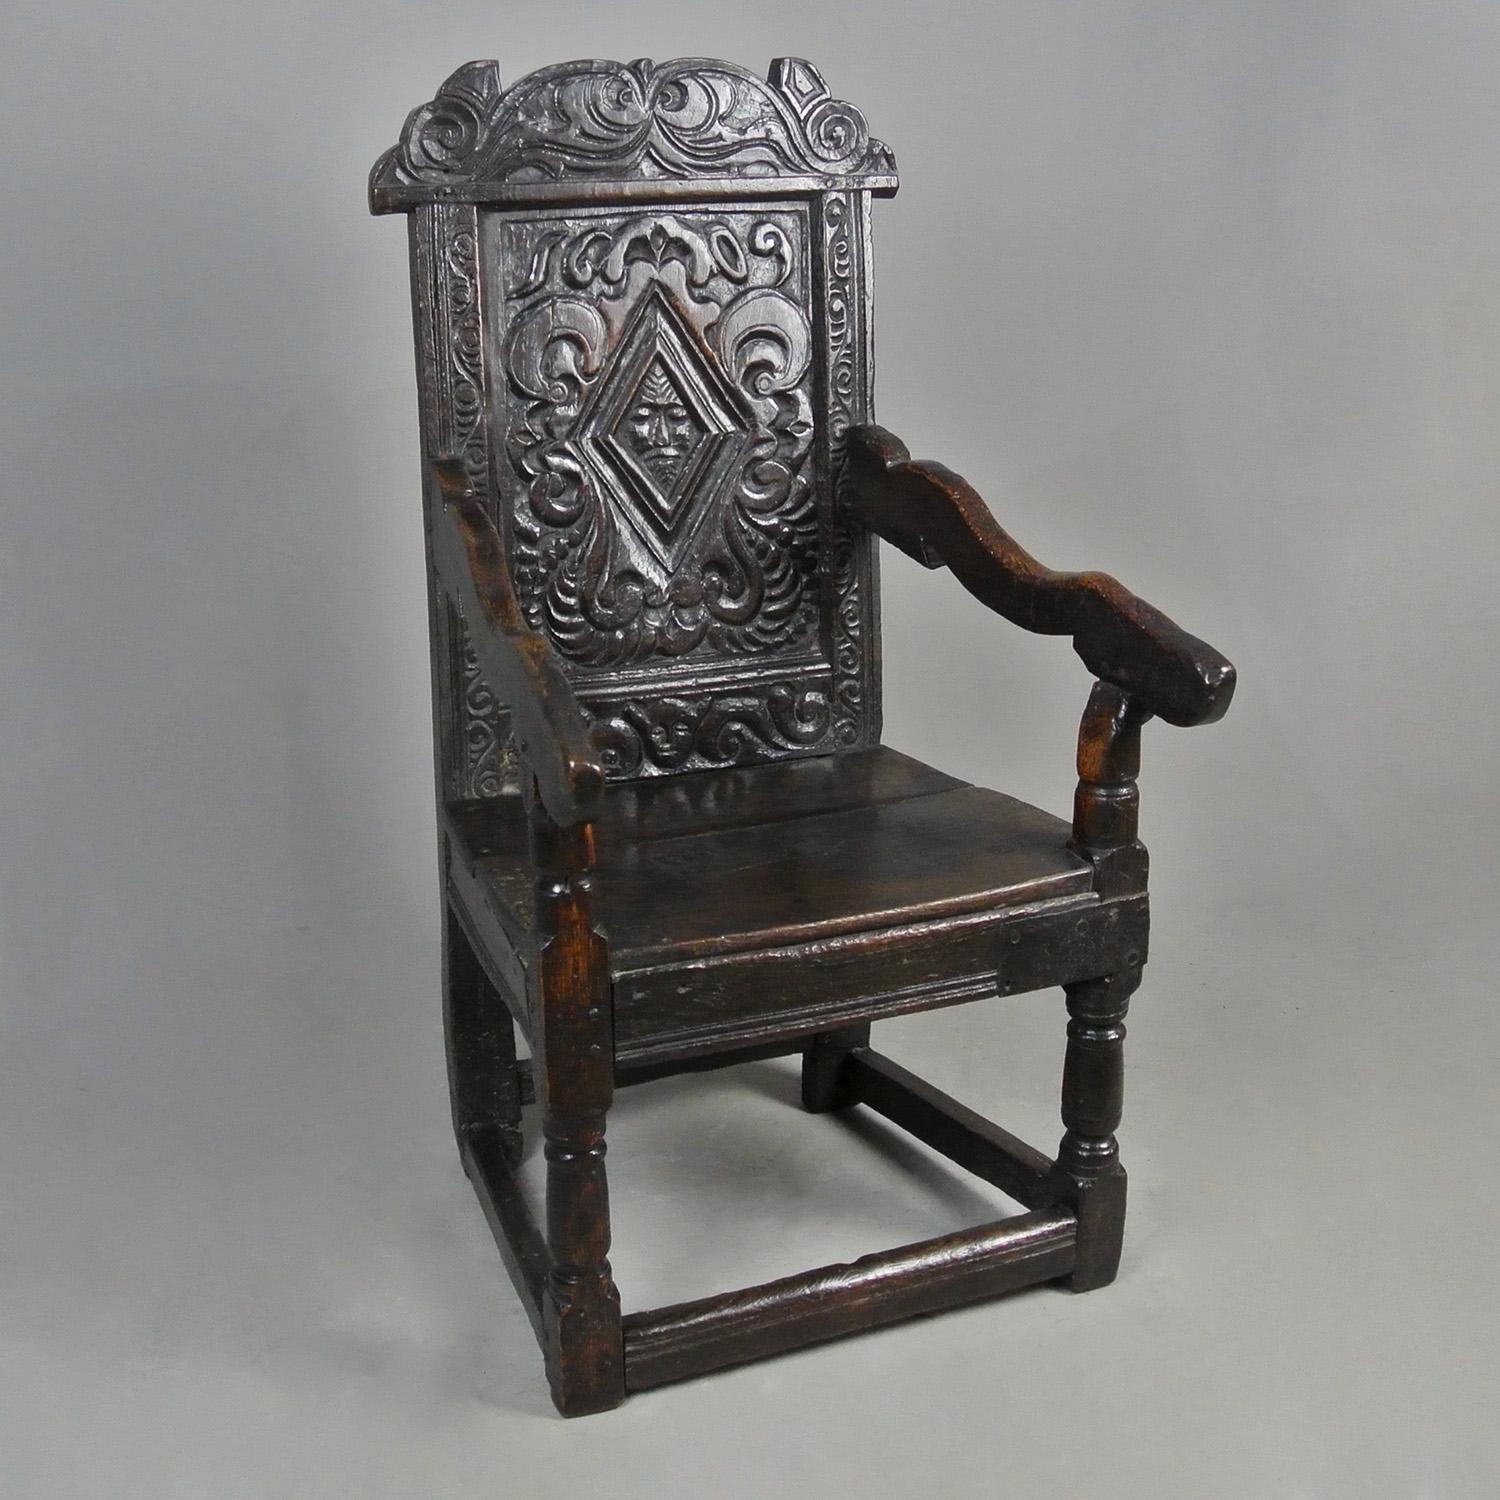 Une chaise en chêne anglaise extrêmement rare et délicieusement sculptée, datée de 1609, avec deux masques figuratifs - le masque central pourrait être l'